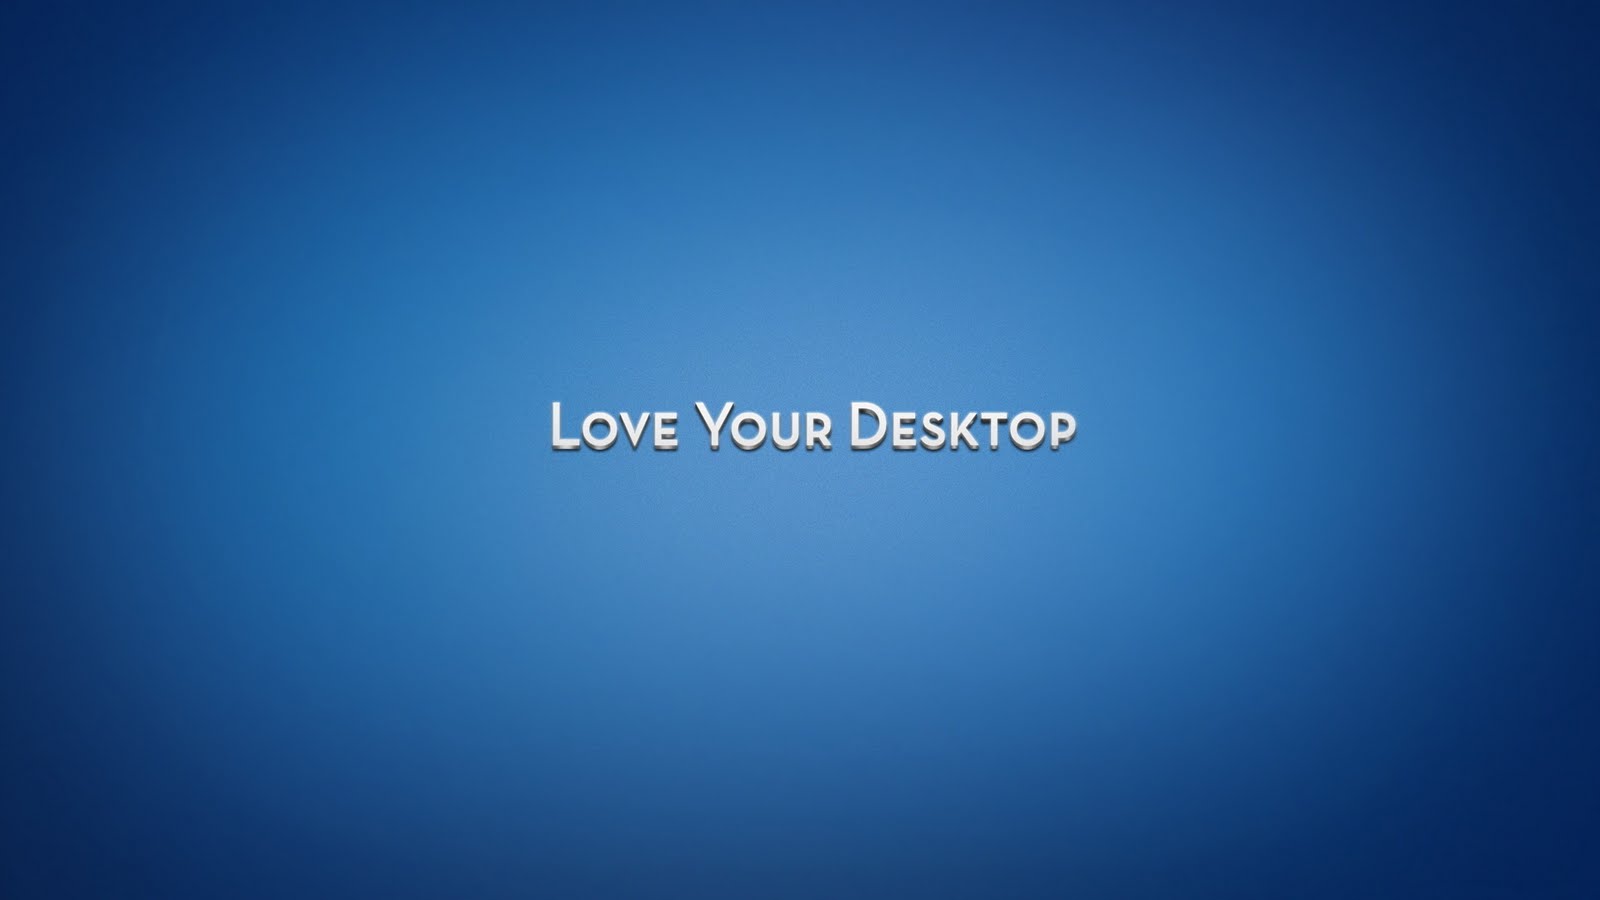 http://2.bp.blogspot.com/-MsnM_iAOSoA/TktVkg9QMsI/AAAAAAAAAyw/74a6mICoSTs/s1600/love-your-desktop-1080p-hd-wallpaper.jpg